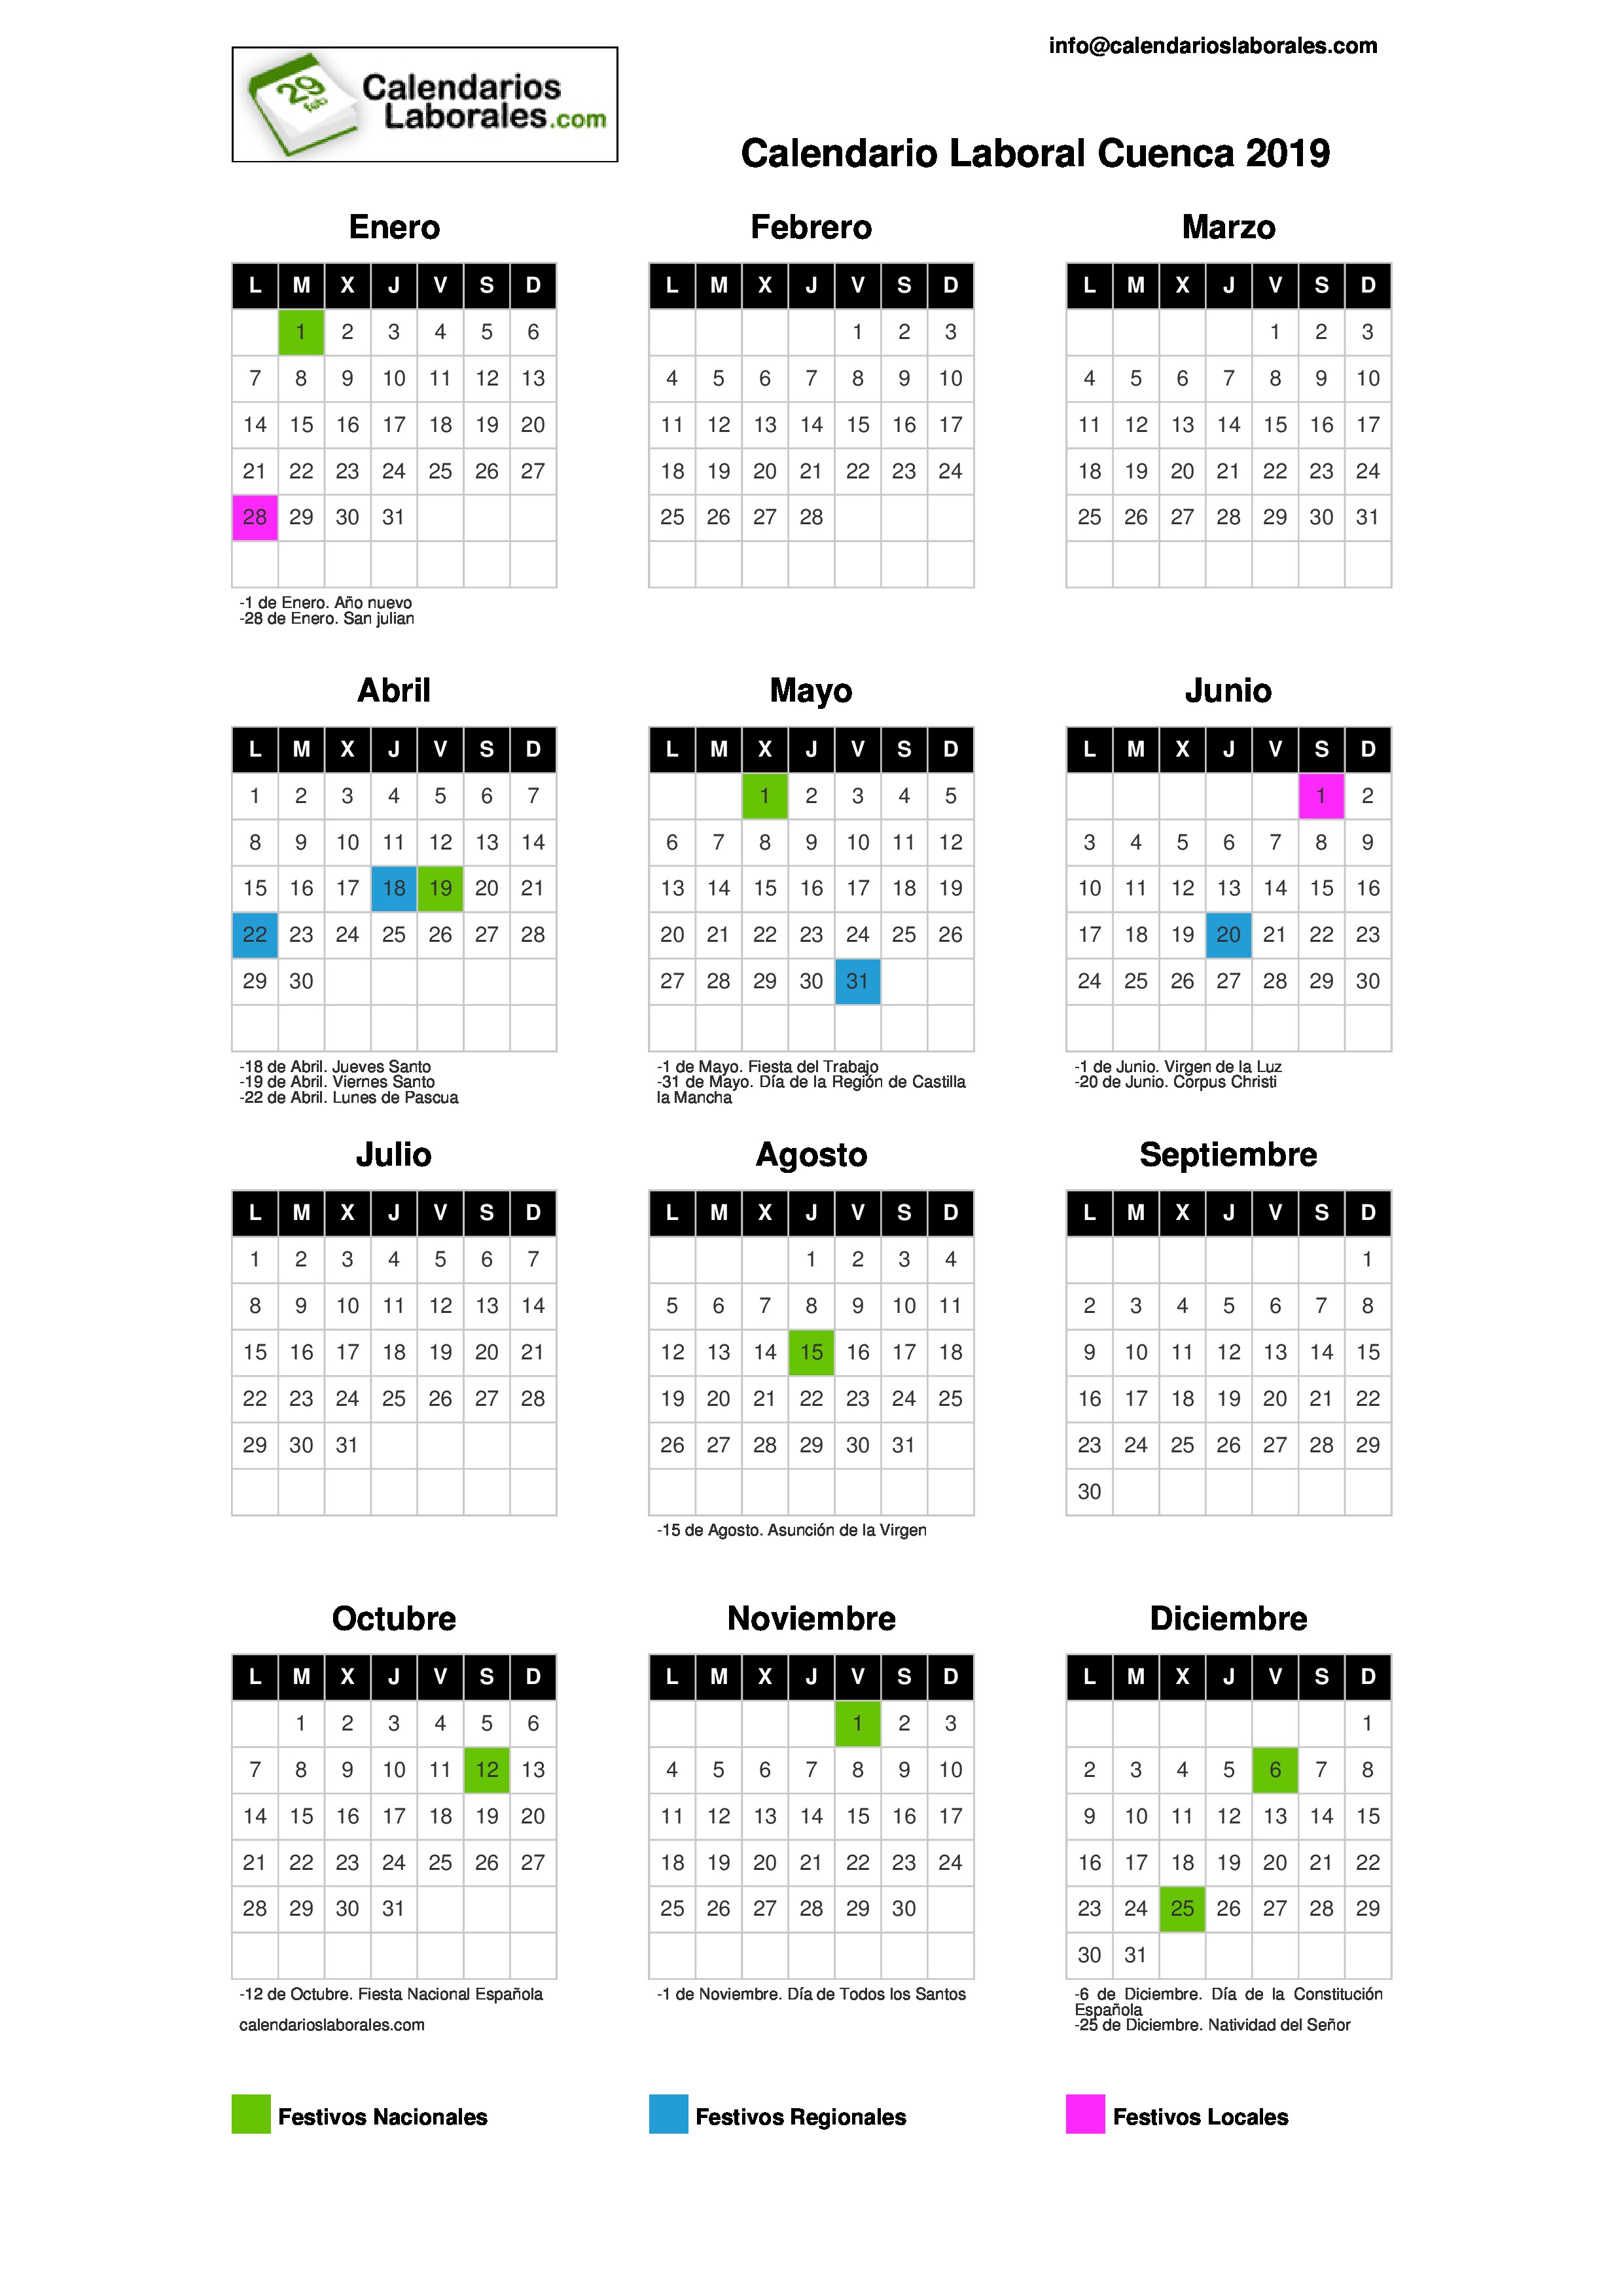 Calendario Laboral Cuenca 2019